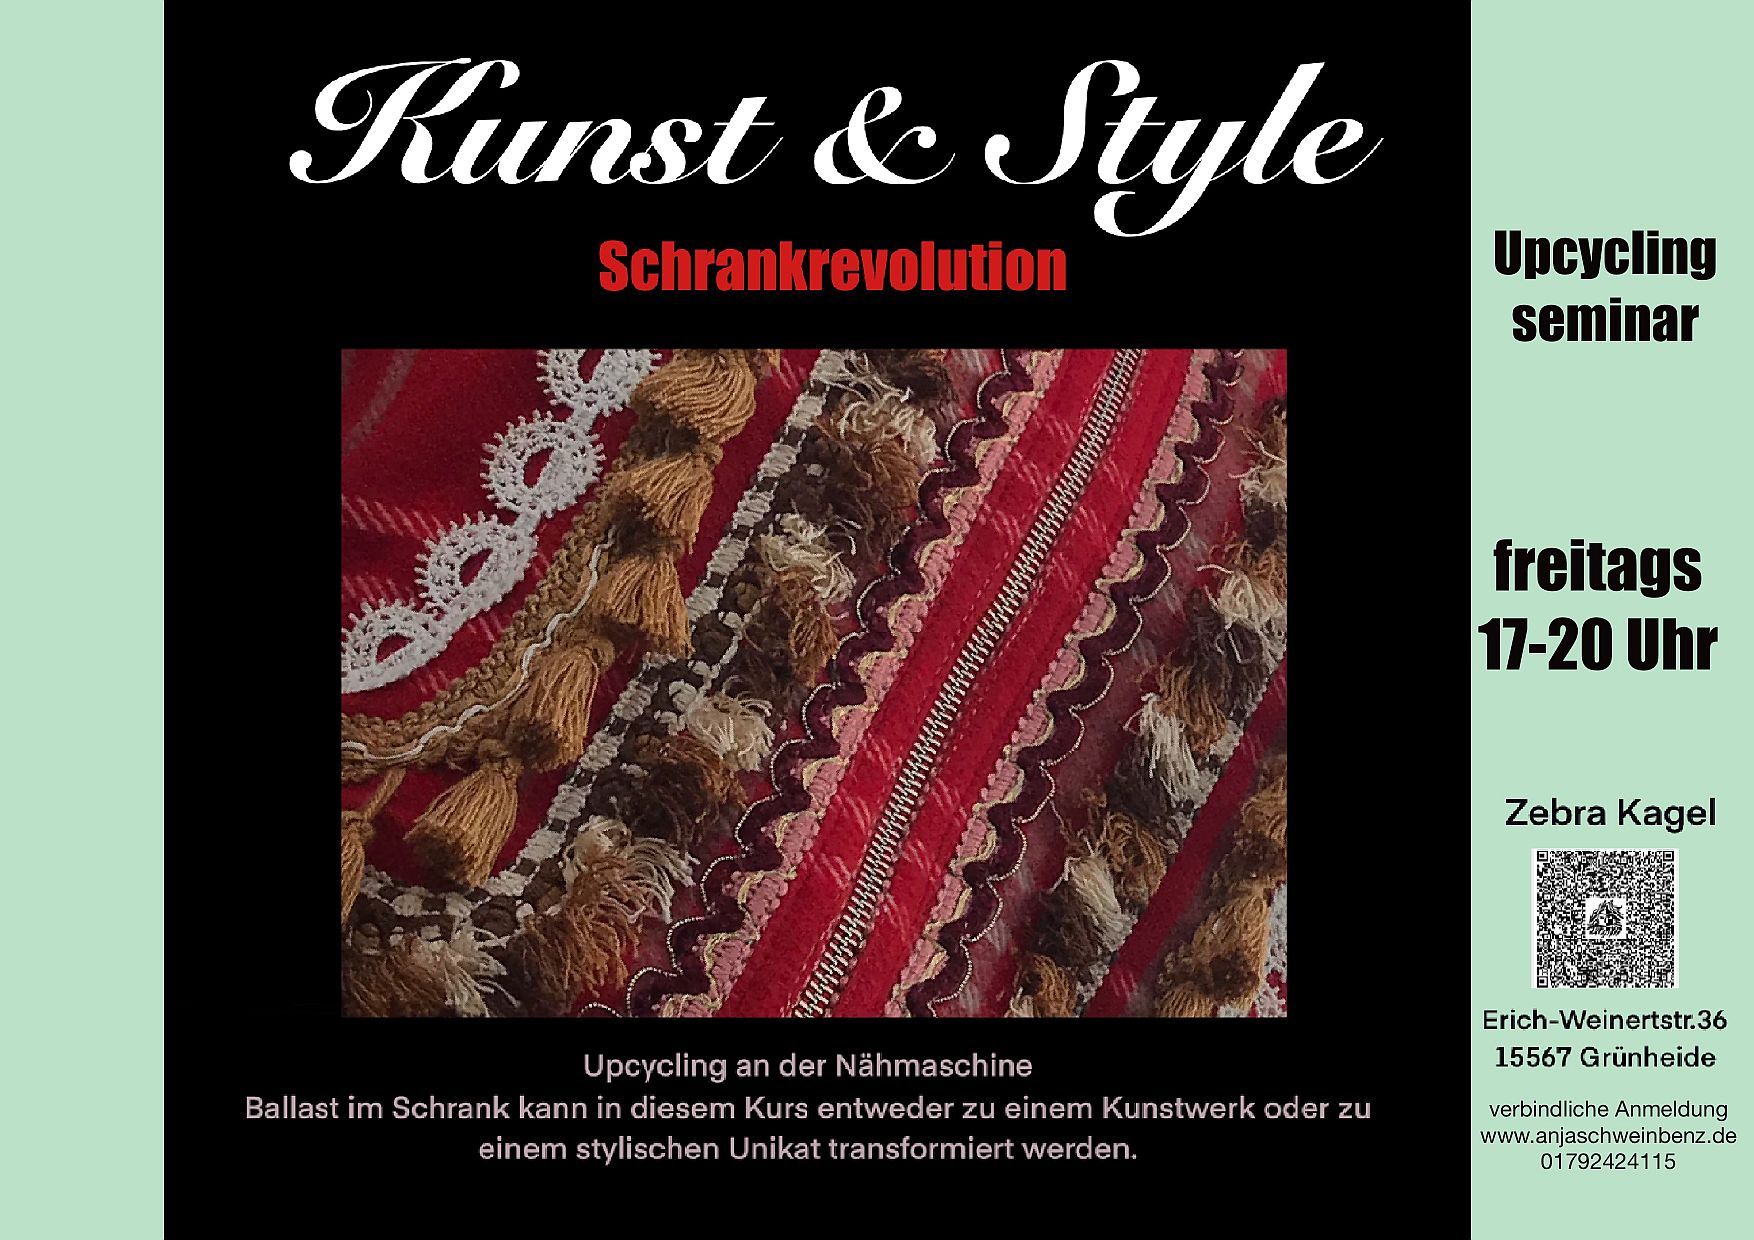 Textildesign-Workshops mit Anja Schweinbenz